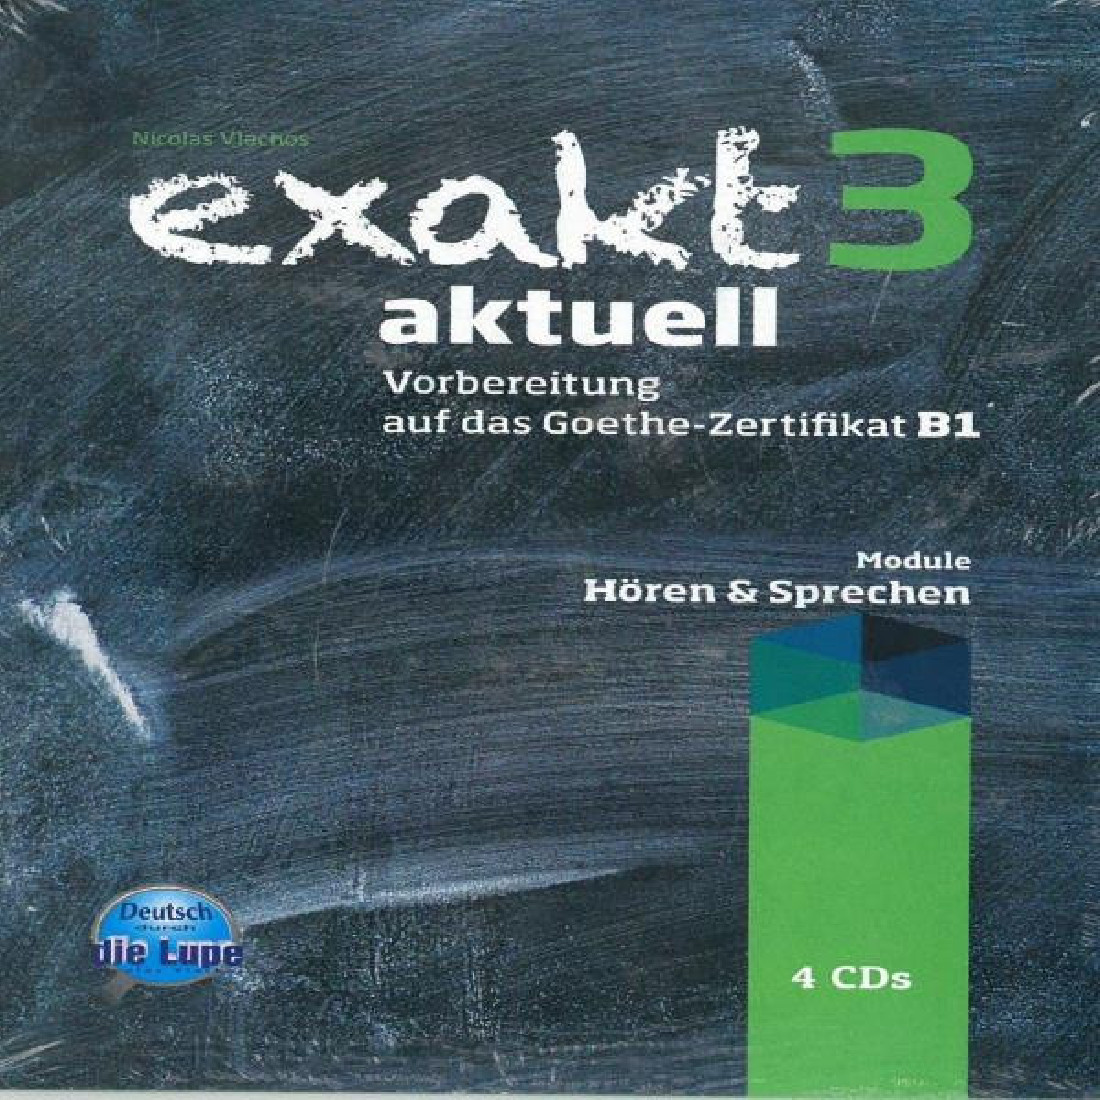 EXAKT AKTUELL 3 (HOREN & SPRECHEN) CDs(4) 2013